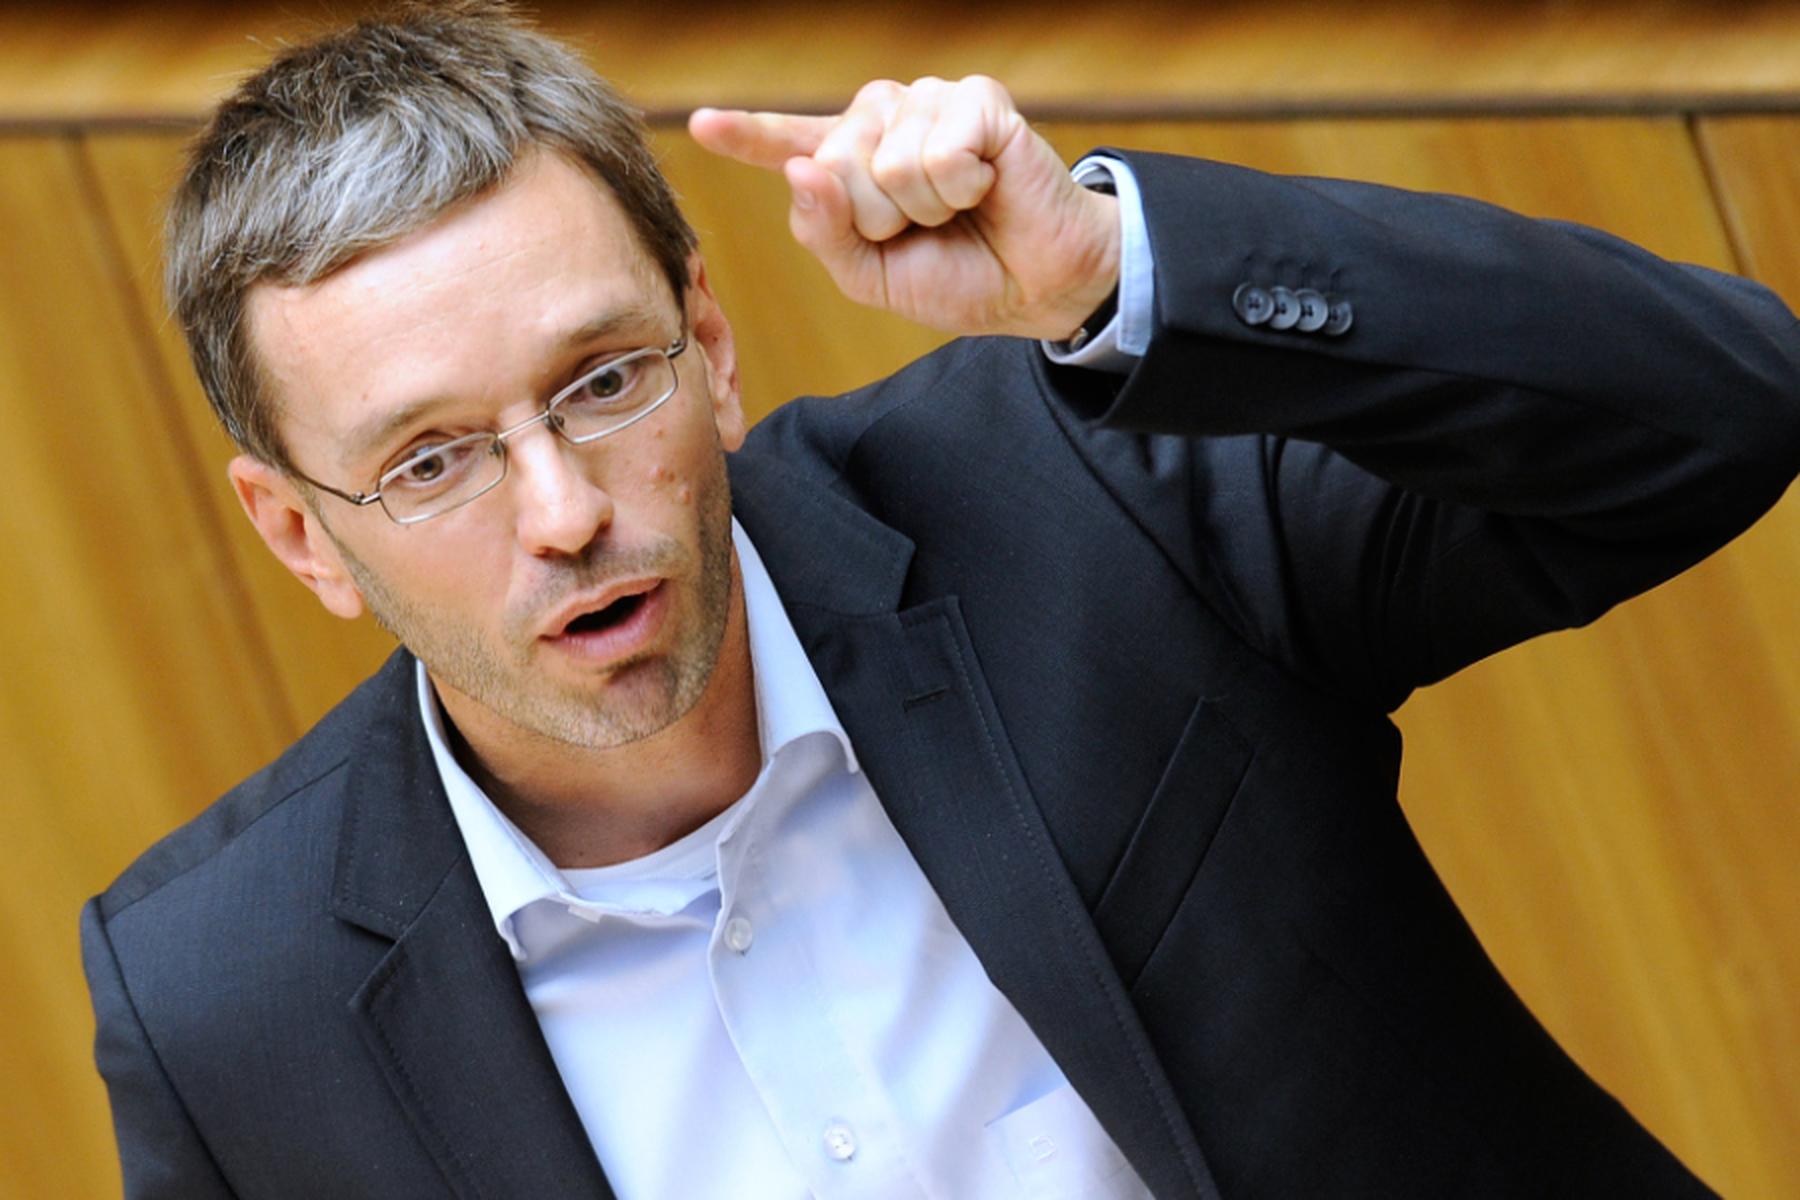 Harte Kritik an FPÖ-Chef Herbert Kickl wegen früherer Aussage zur SS